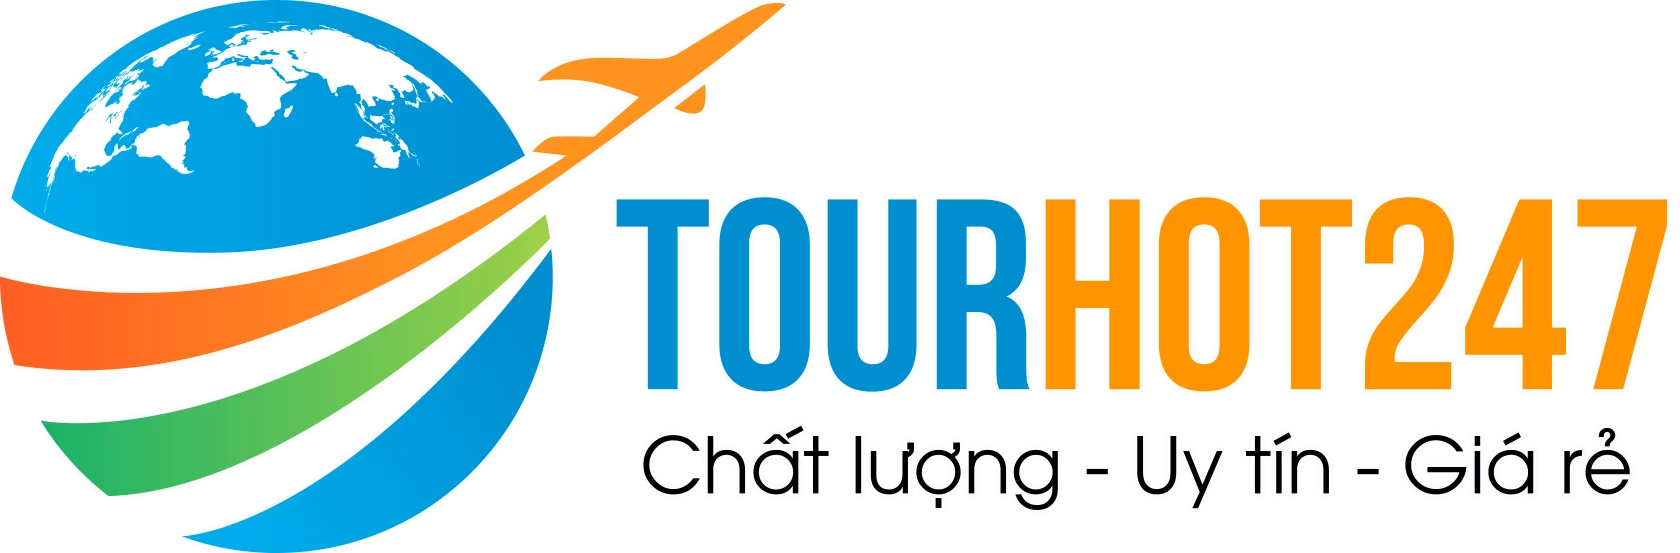 Tourhot247.com – Chuyên tour chất lượng – Uy tín – Giá rẻ